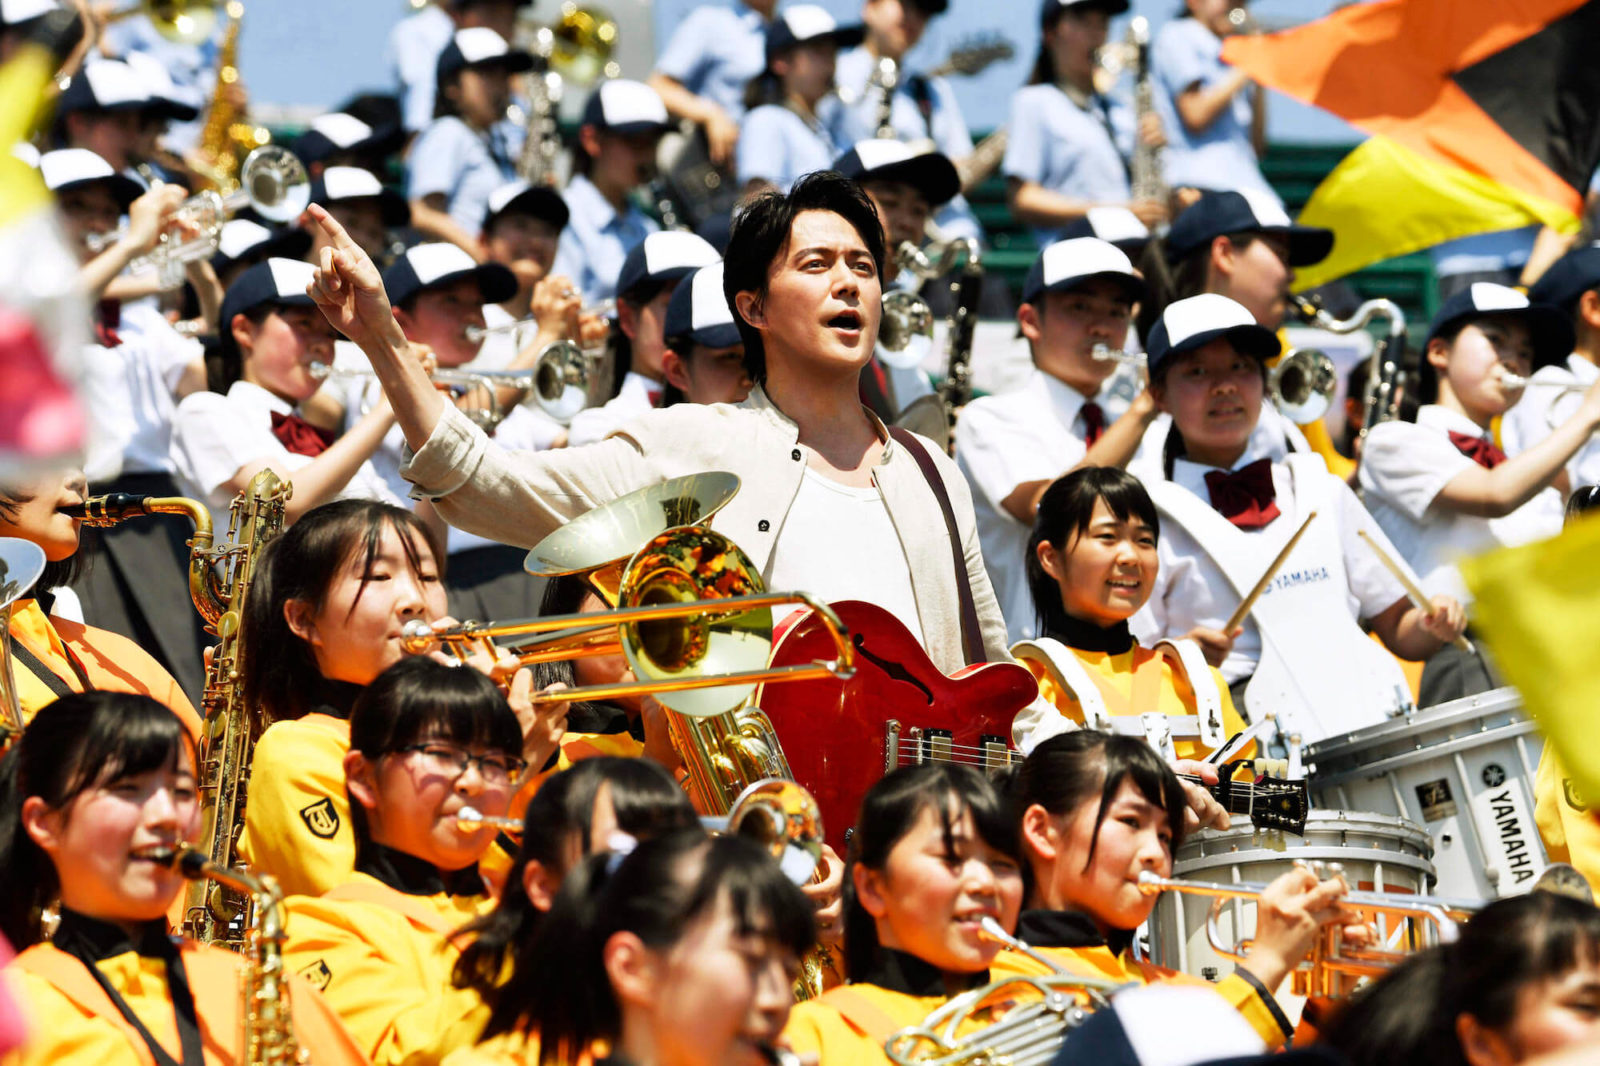 福山雅治“NHK高校野球テーマソング”「甲子園」NHKオフィシャルミュージックビデオが完成サムネイル画像!